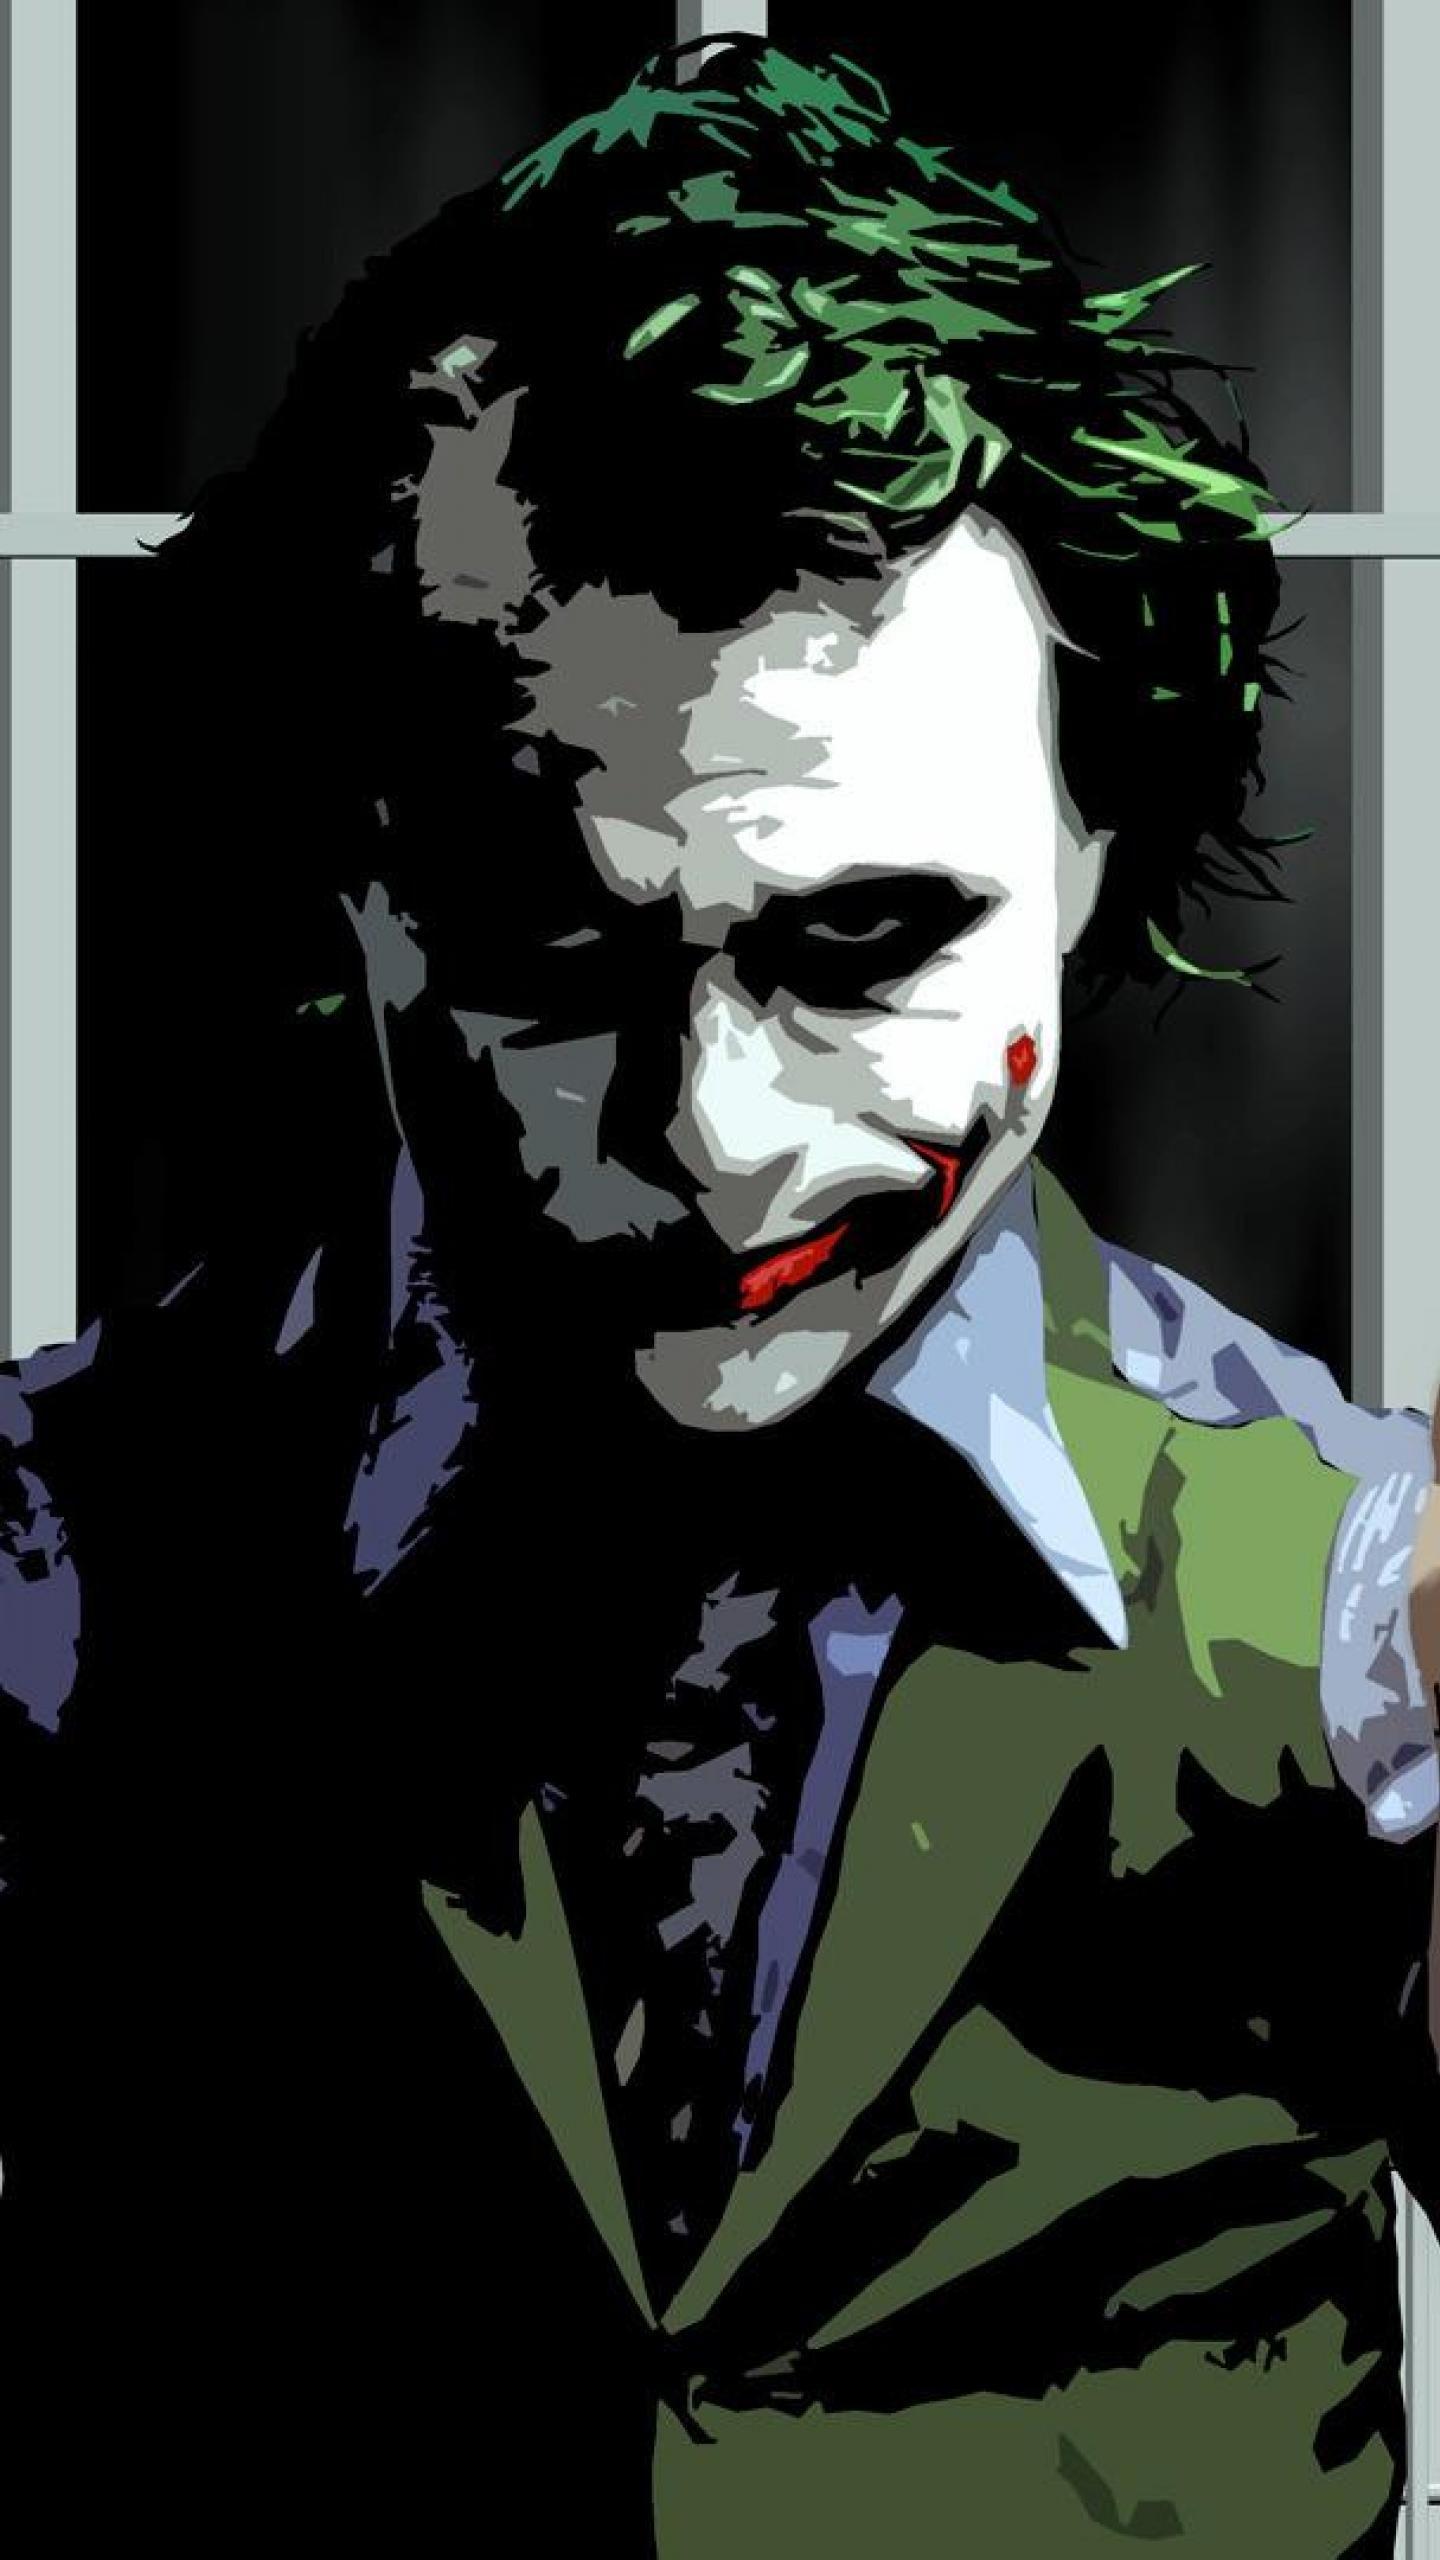 35 Gambar Wallpaper Joker Hd Untuk Android terbaru 2020